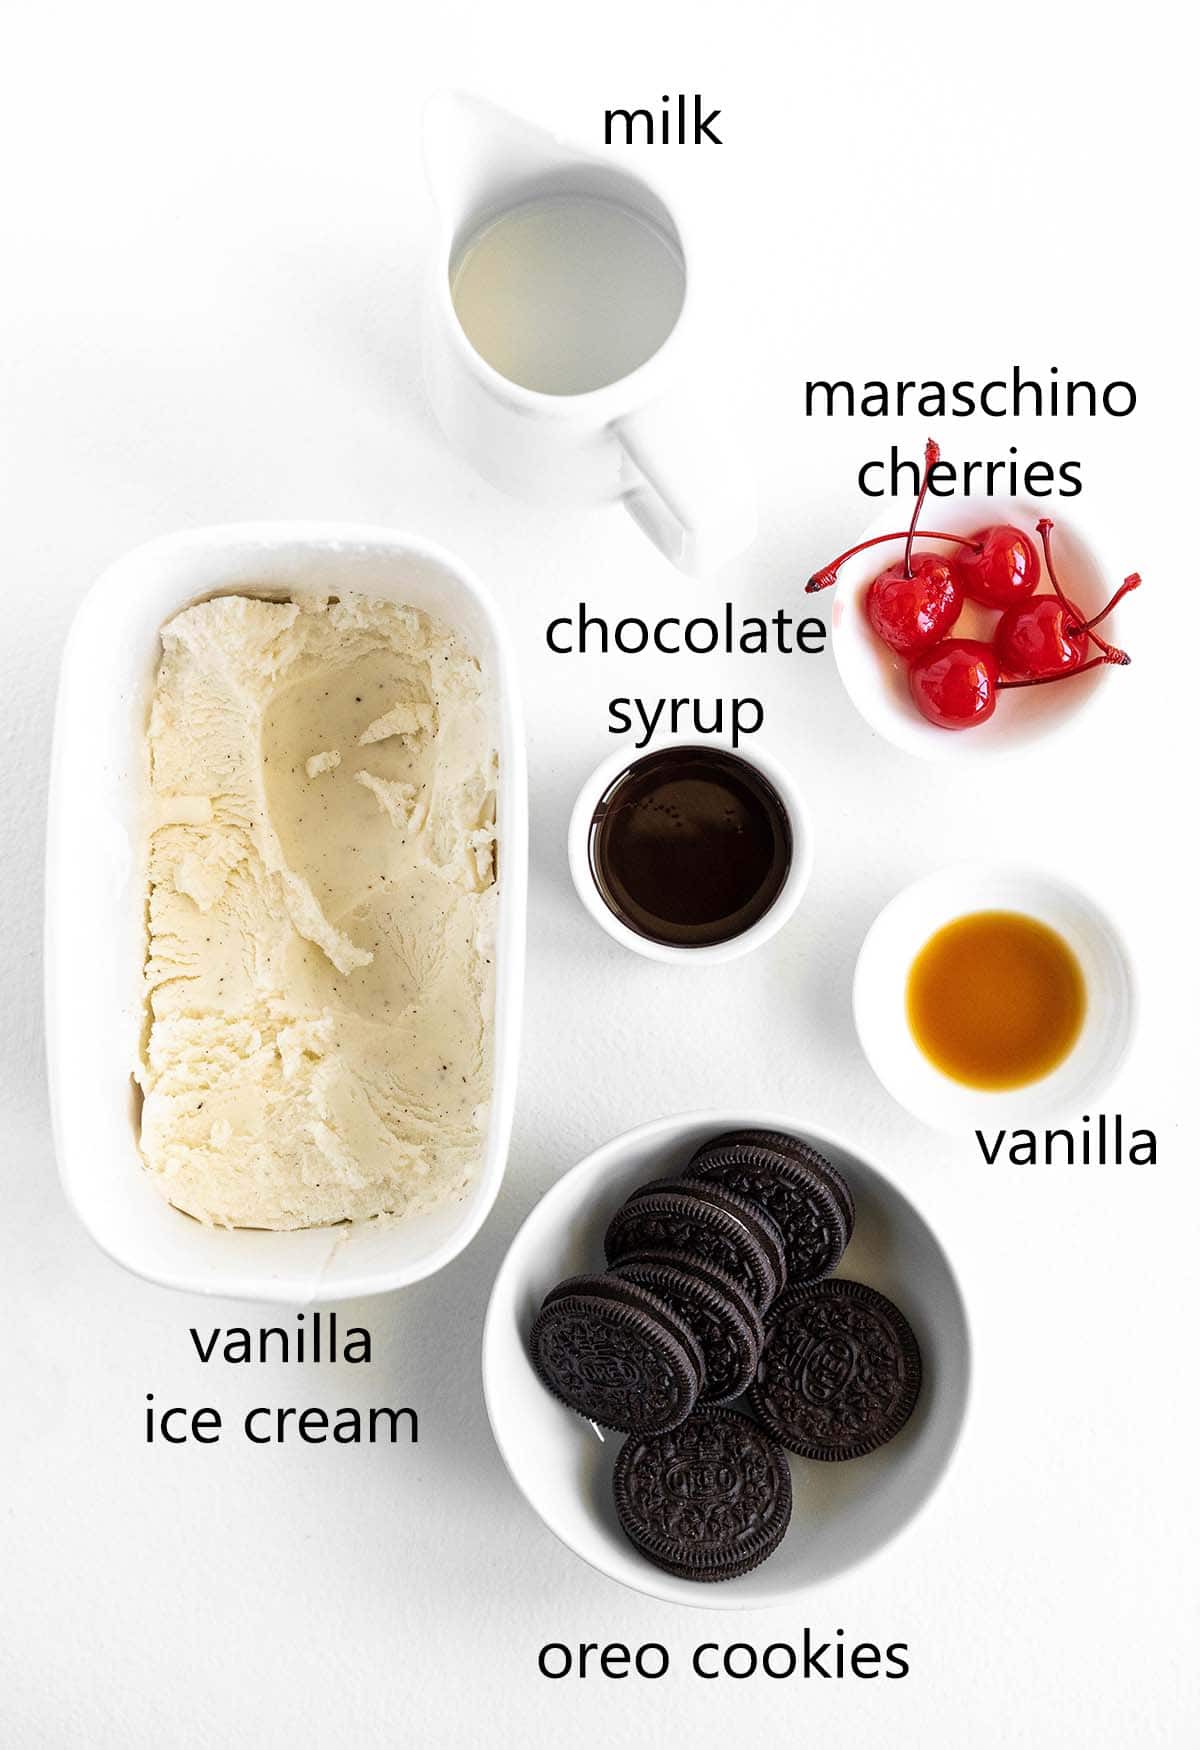 oreo milkshake ingredients